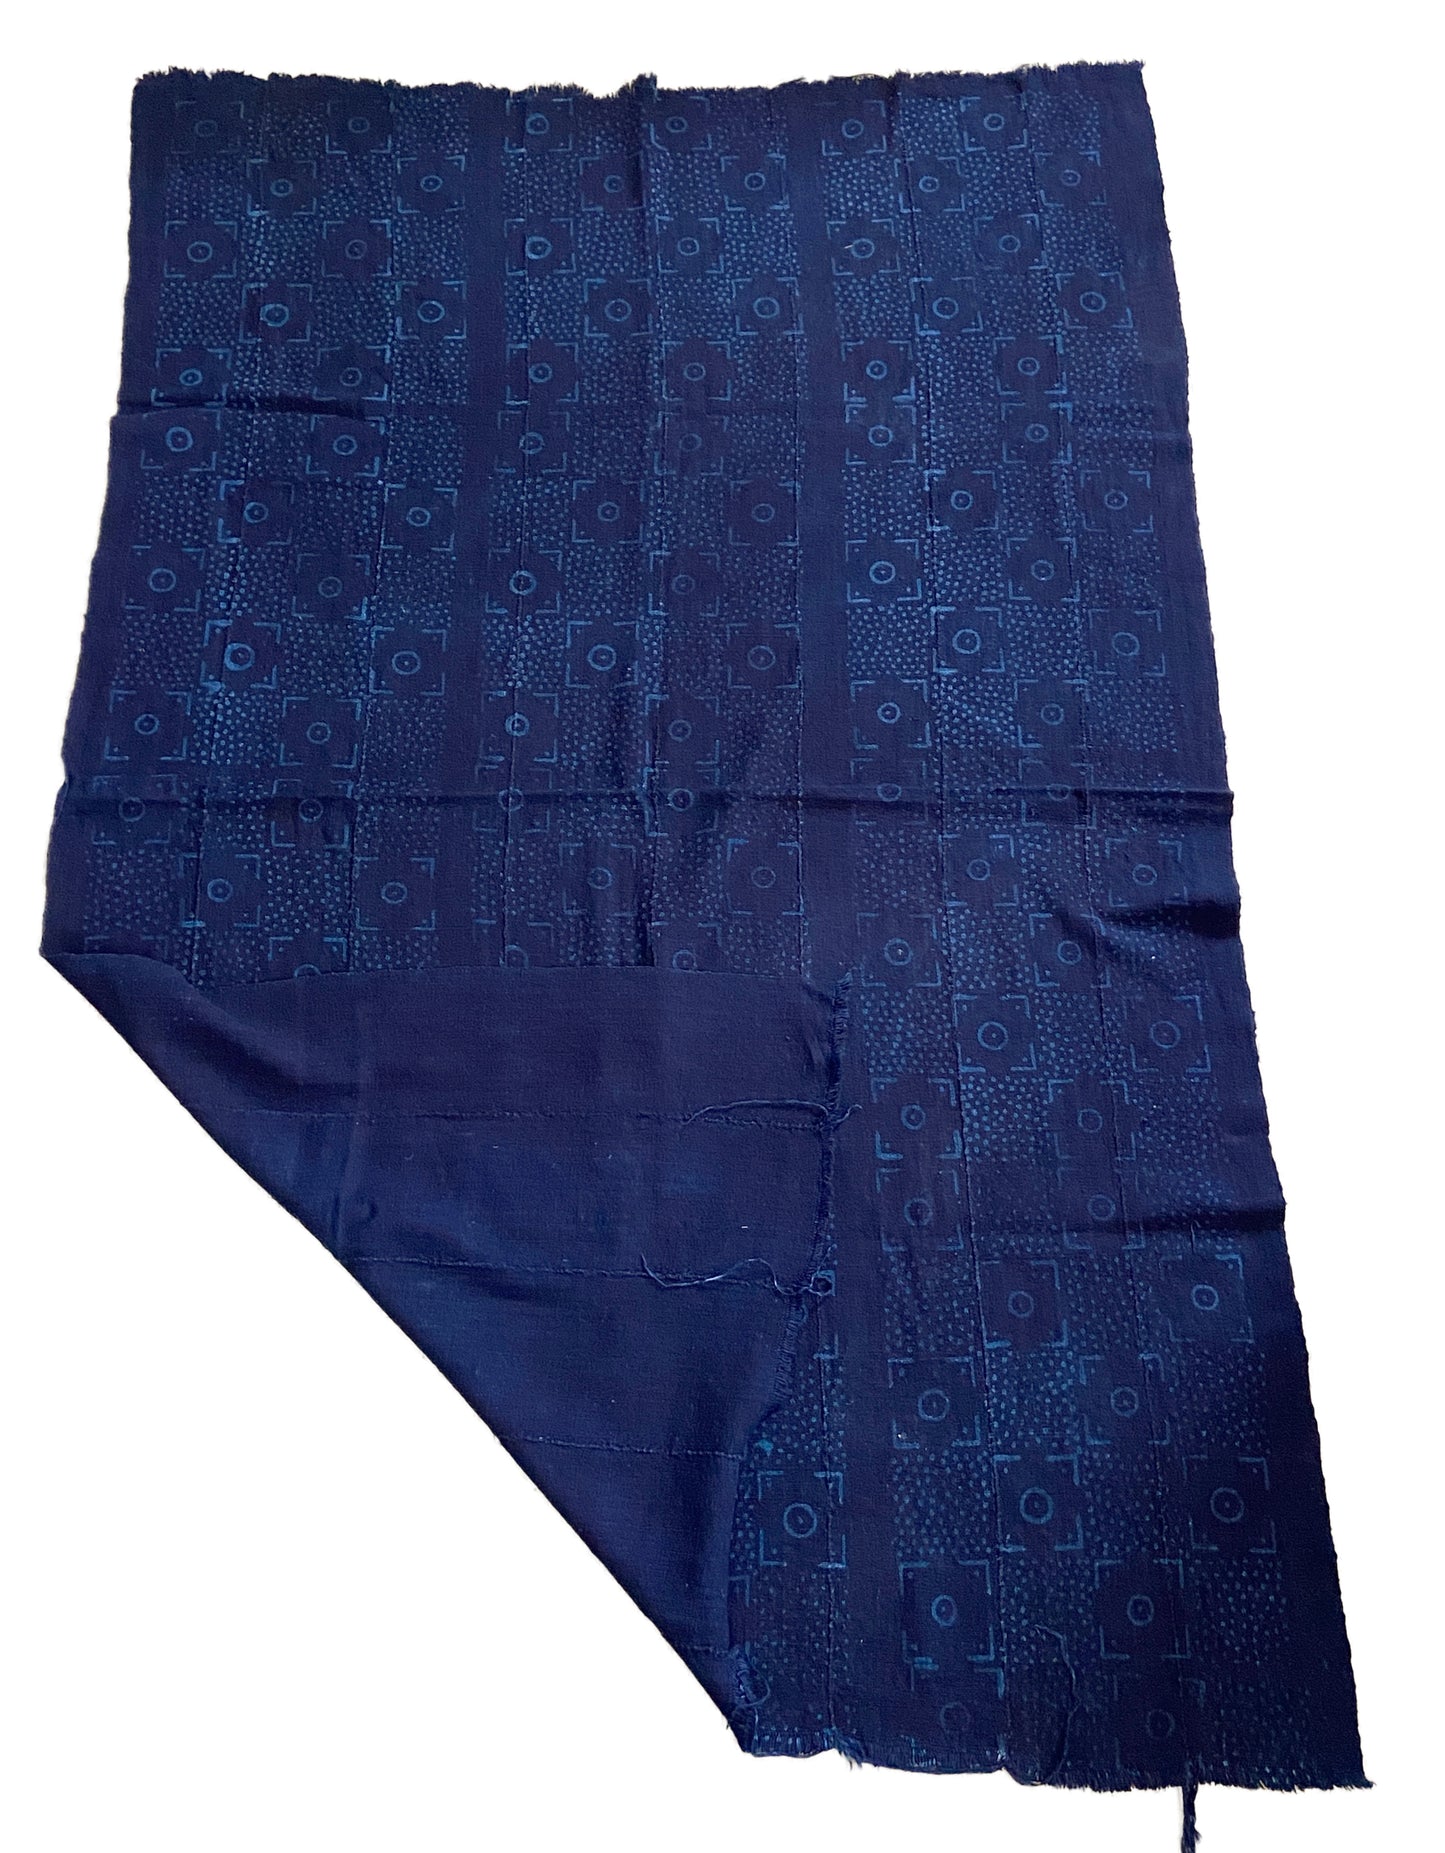 Superb Vtg Mali Indigo Mud Cloth Textile 38" by 59.5"  #3402